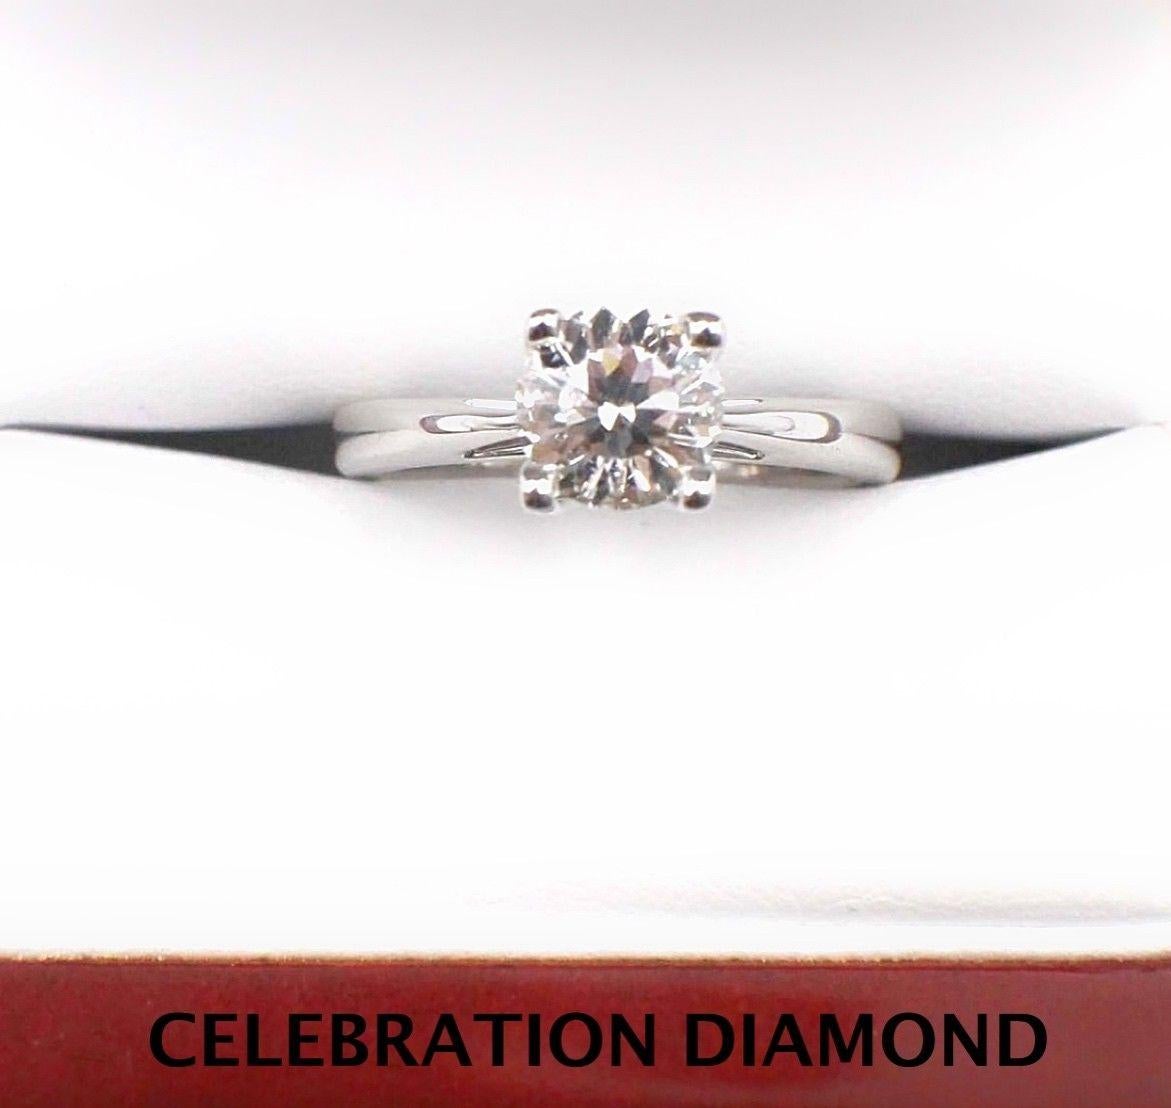 Celebration Diamond Engagement Ring Round Cut 1.09 Carat 18 Karat White Gold 4